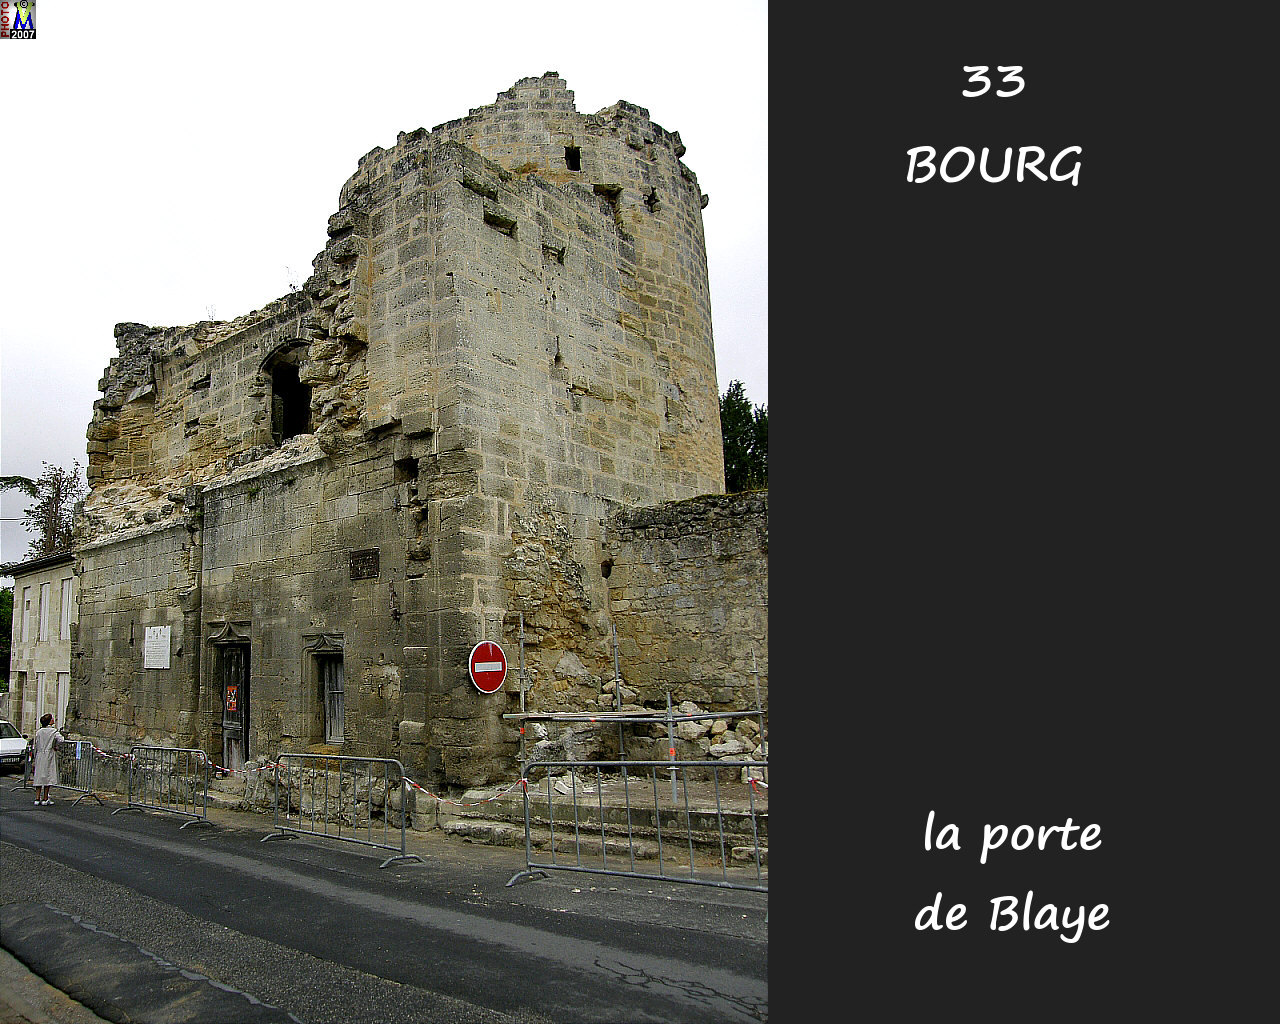 33BOURG_porte-Blaye_100.jpg